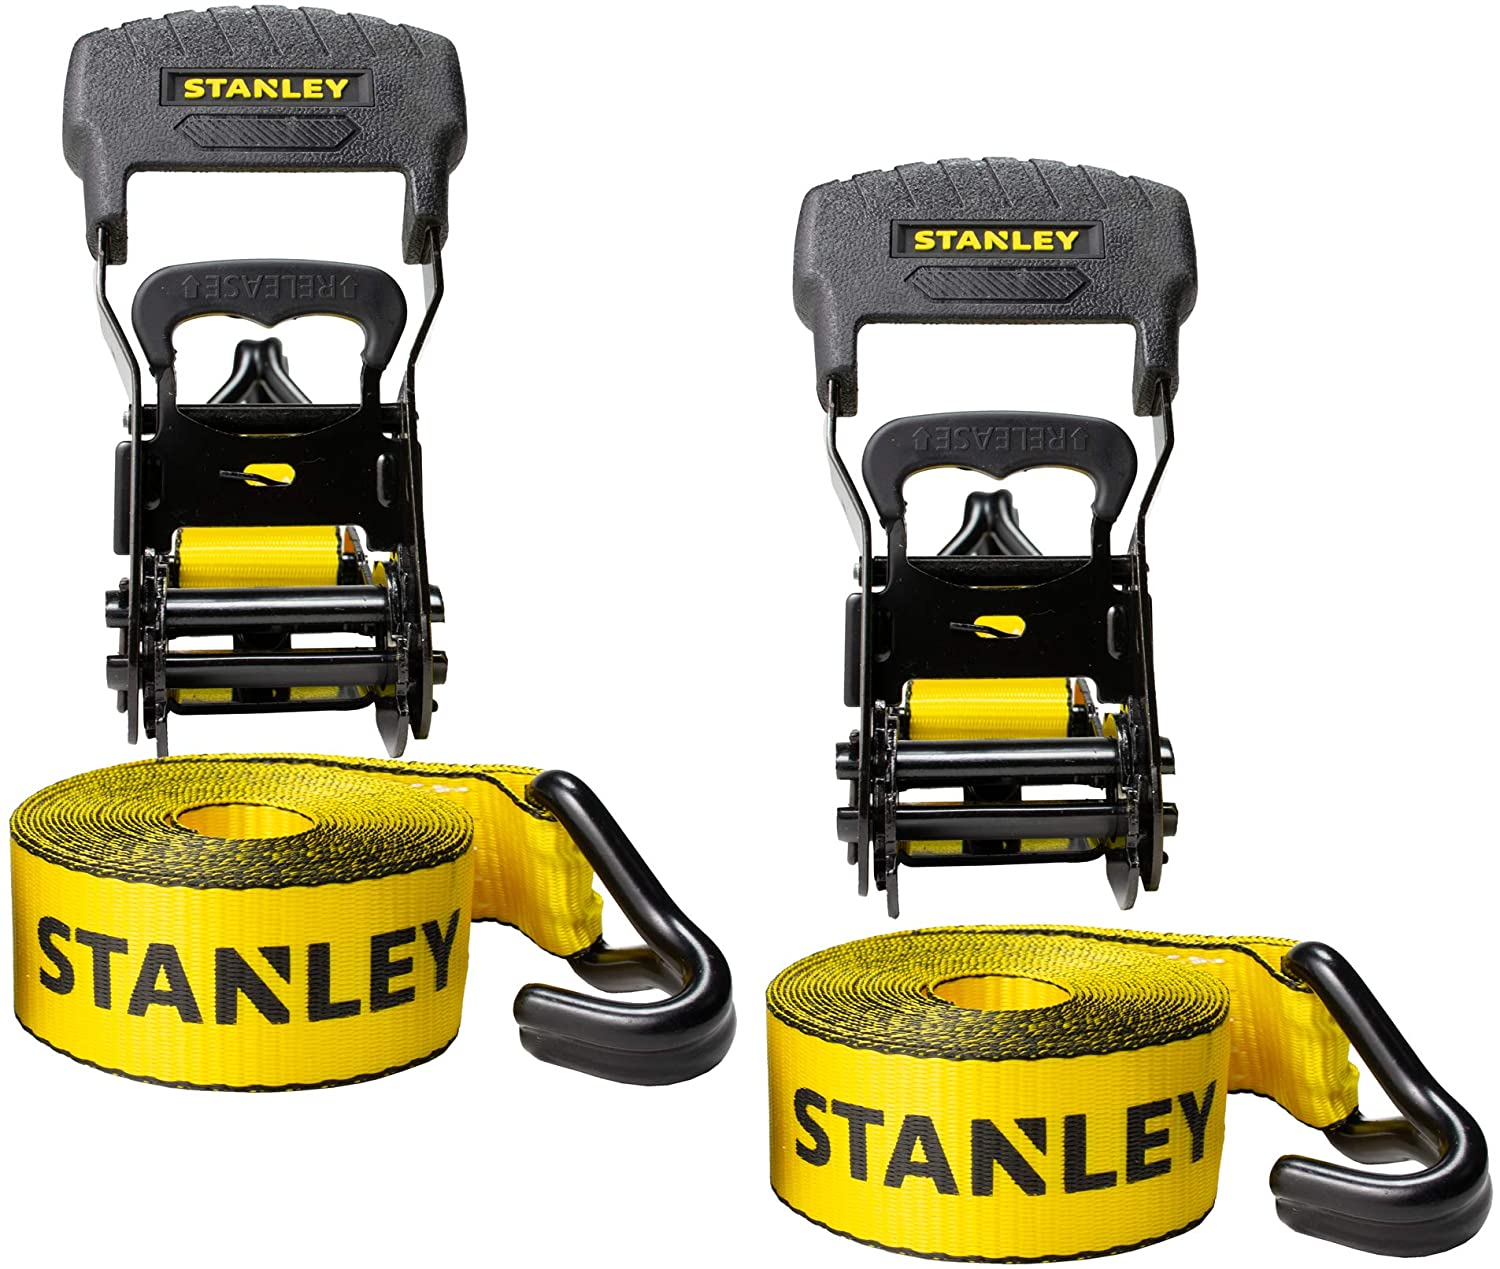 Stanley Strap 